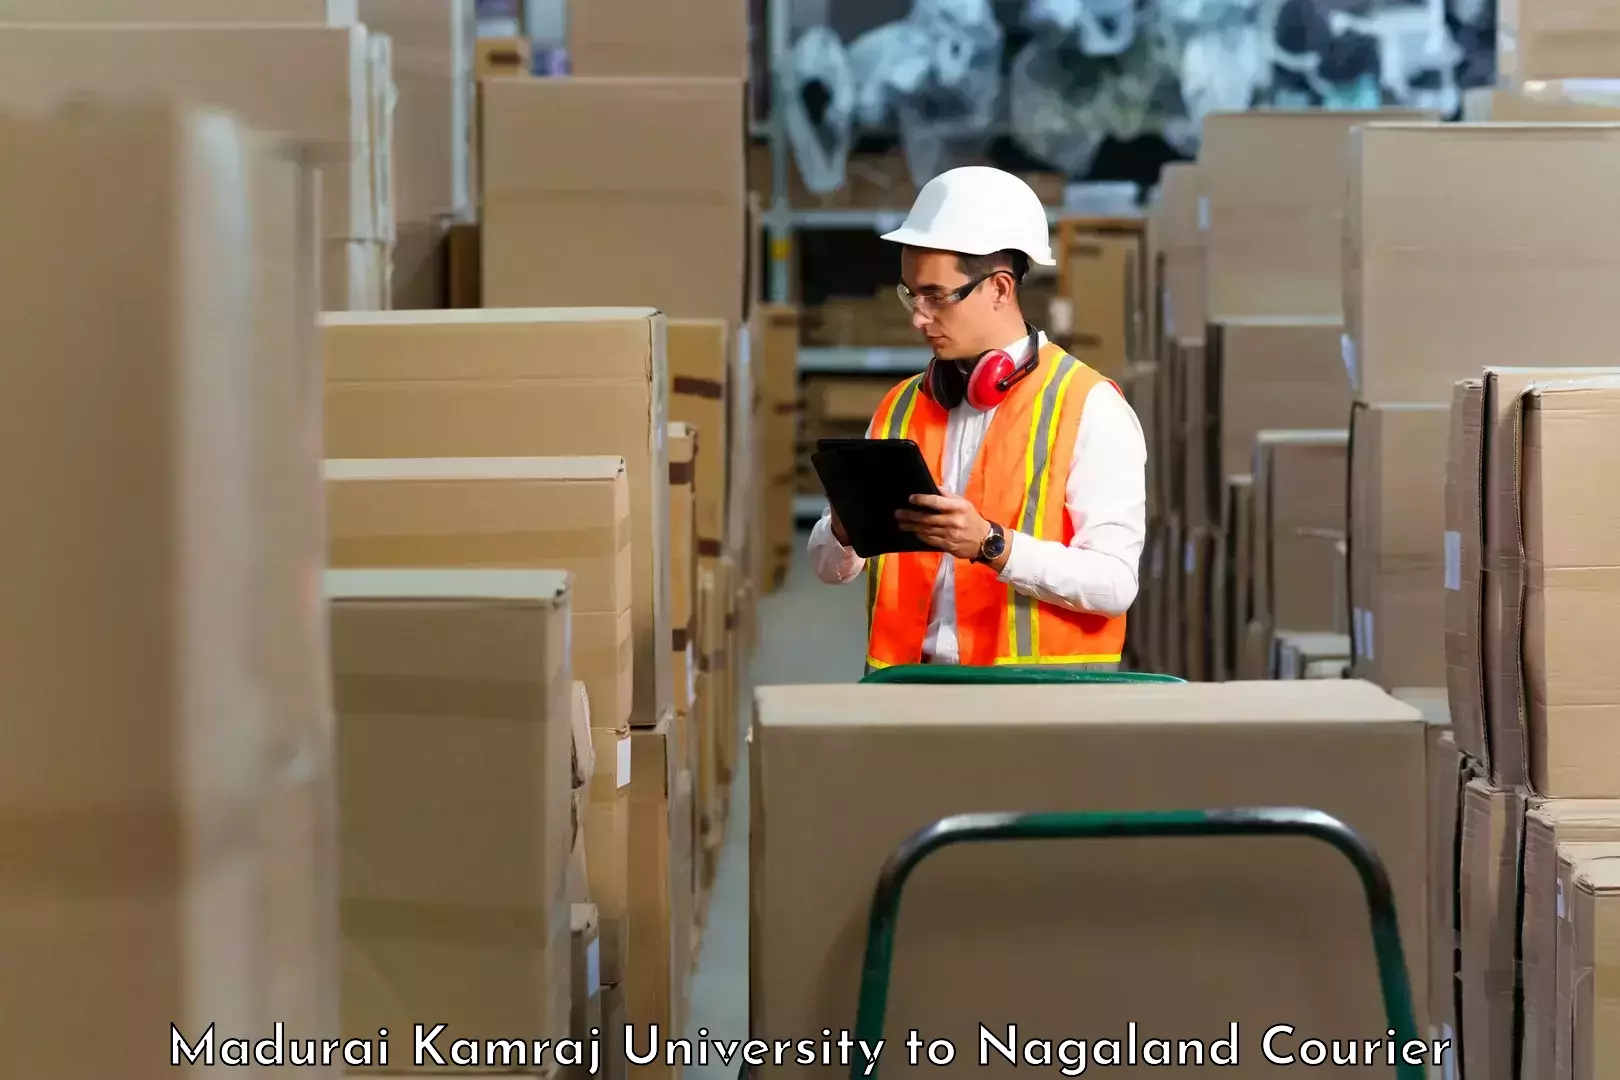 Business delivery service Madurai Kamraj University to Wokha